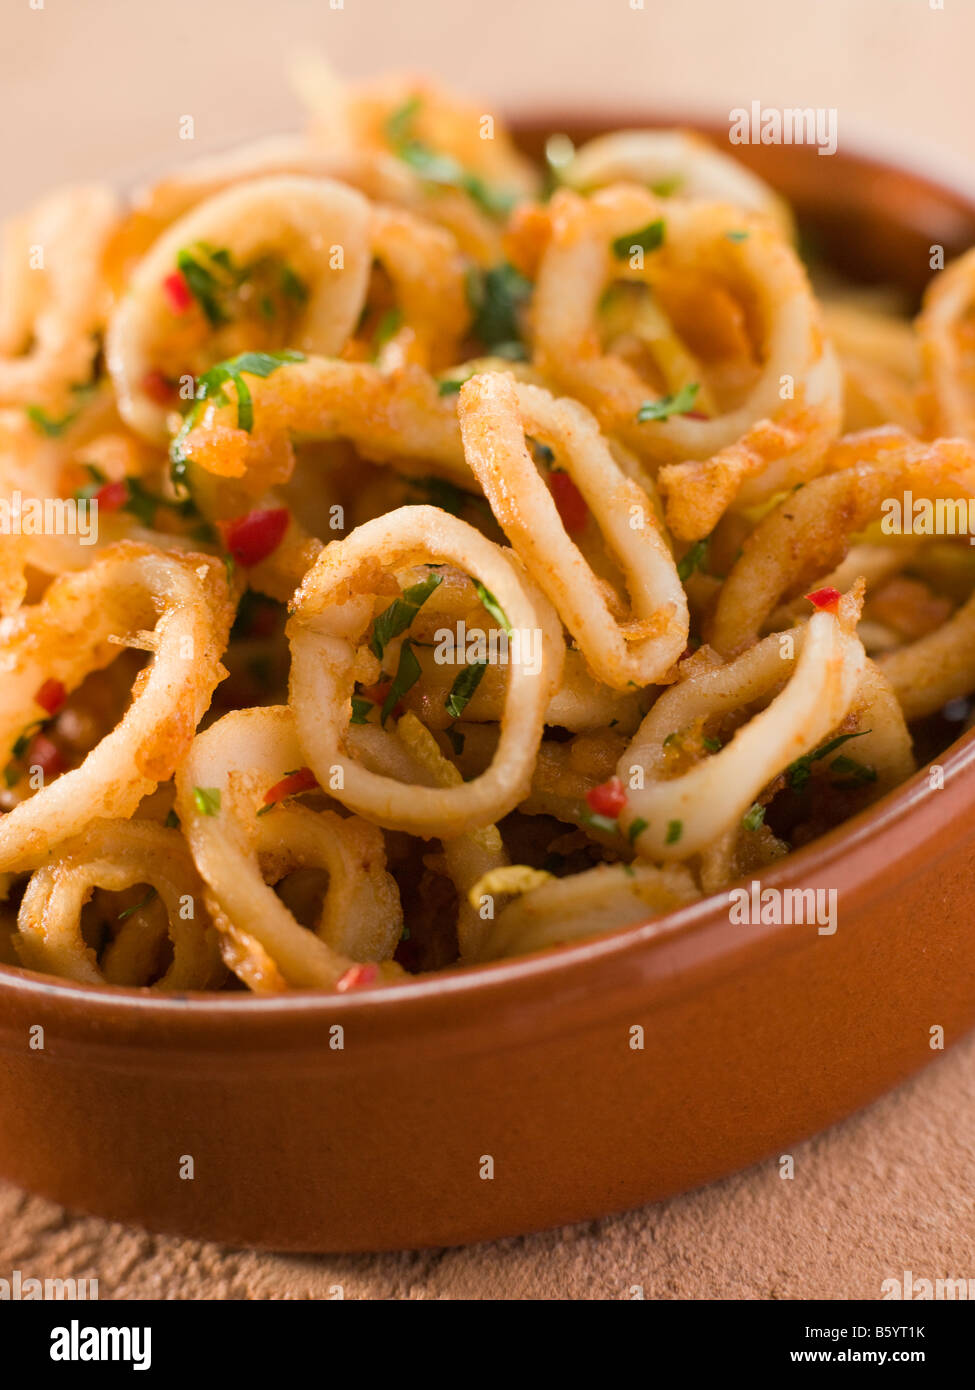 Calameres Frito- anillos de calamar frito Foto de stock